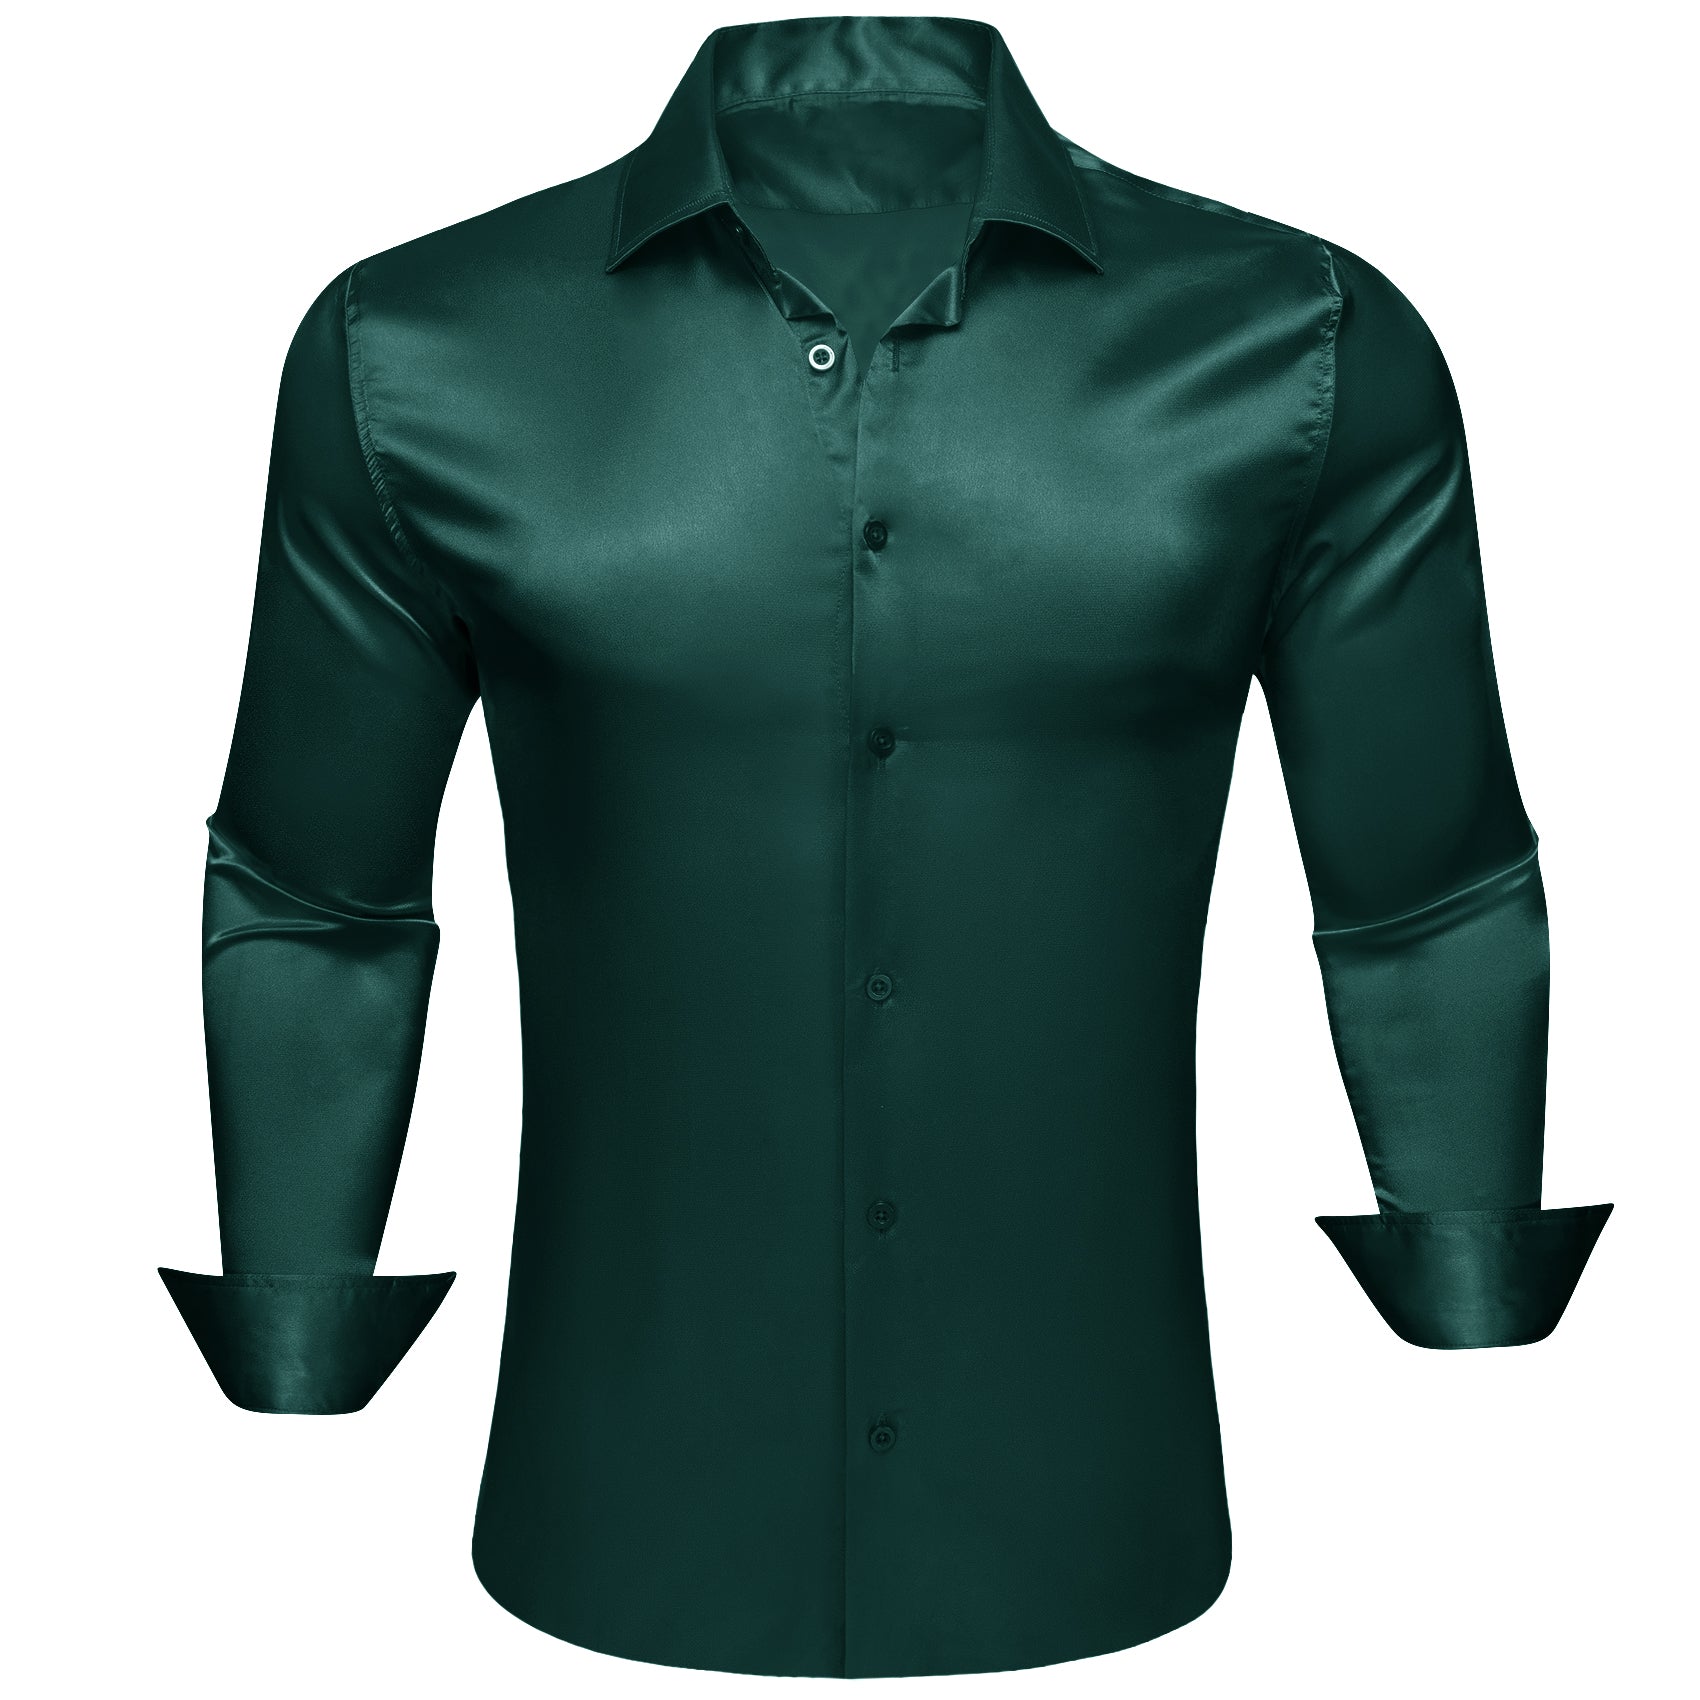 Barry.wang Dark Green Solid Silk Men's Long Sleeve Shirt